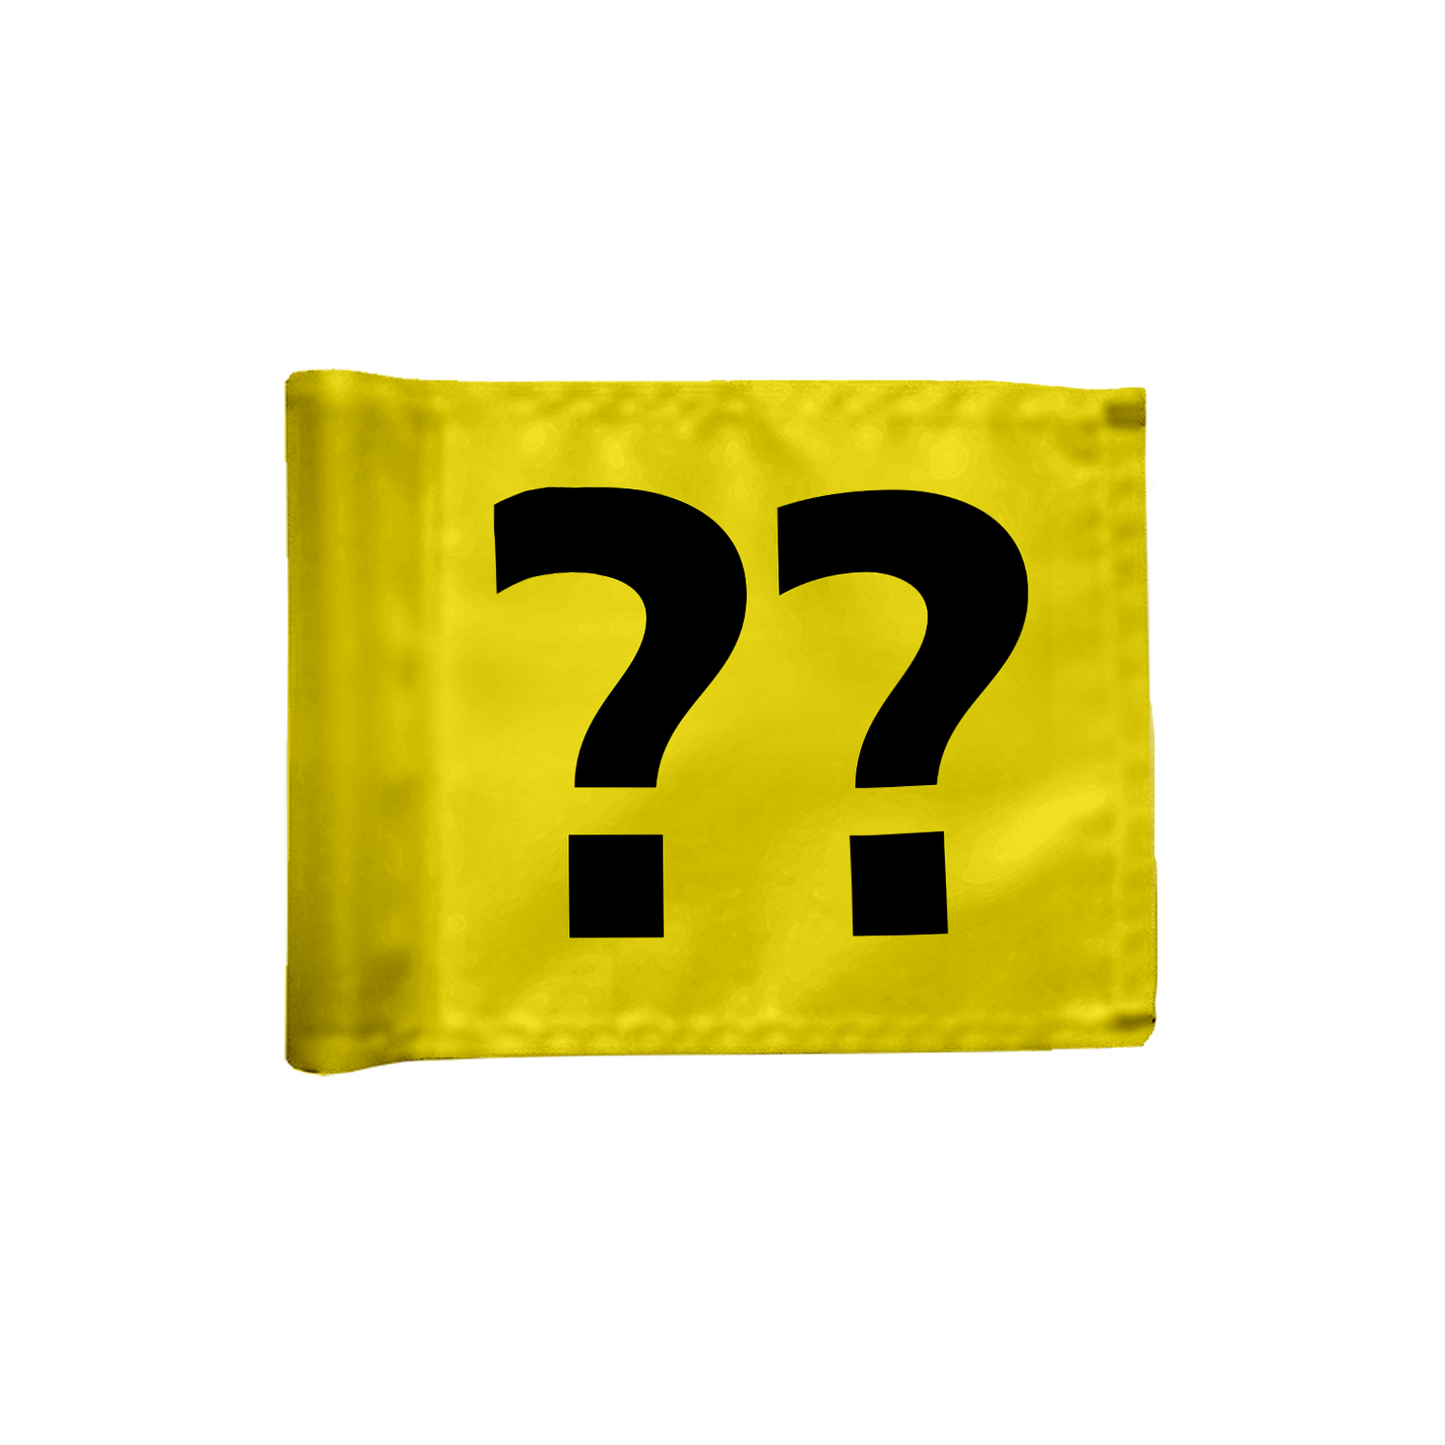 Stykvis puttinggreen flag, i gul med valgfrit hulnummer, 200 gram flagdug